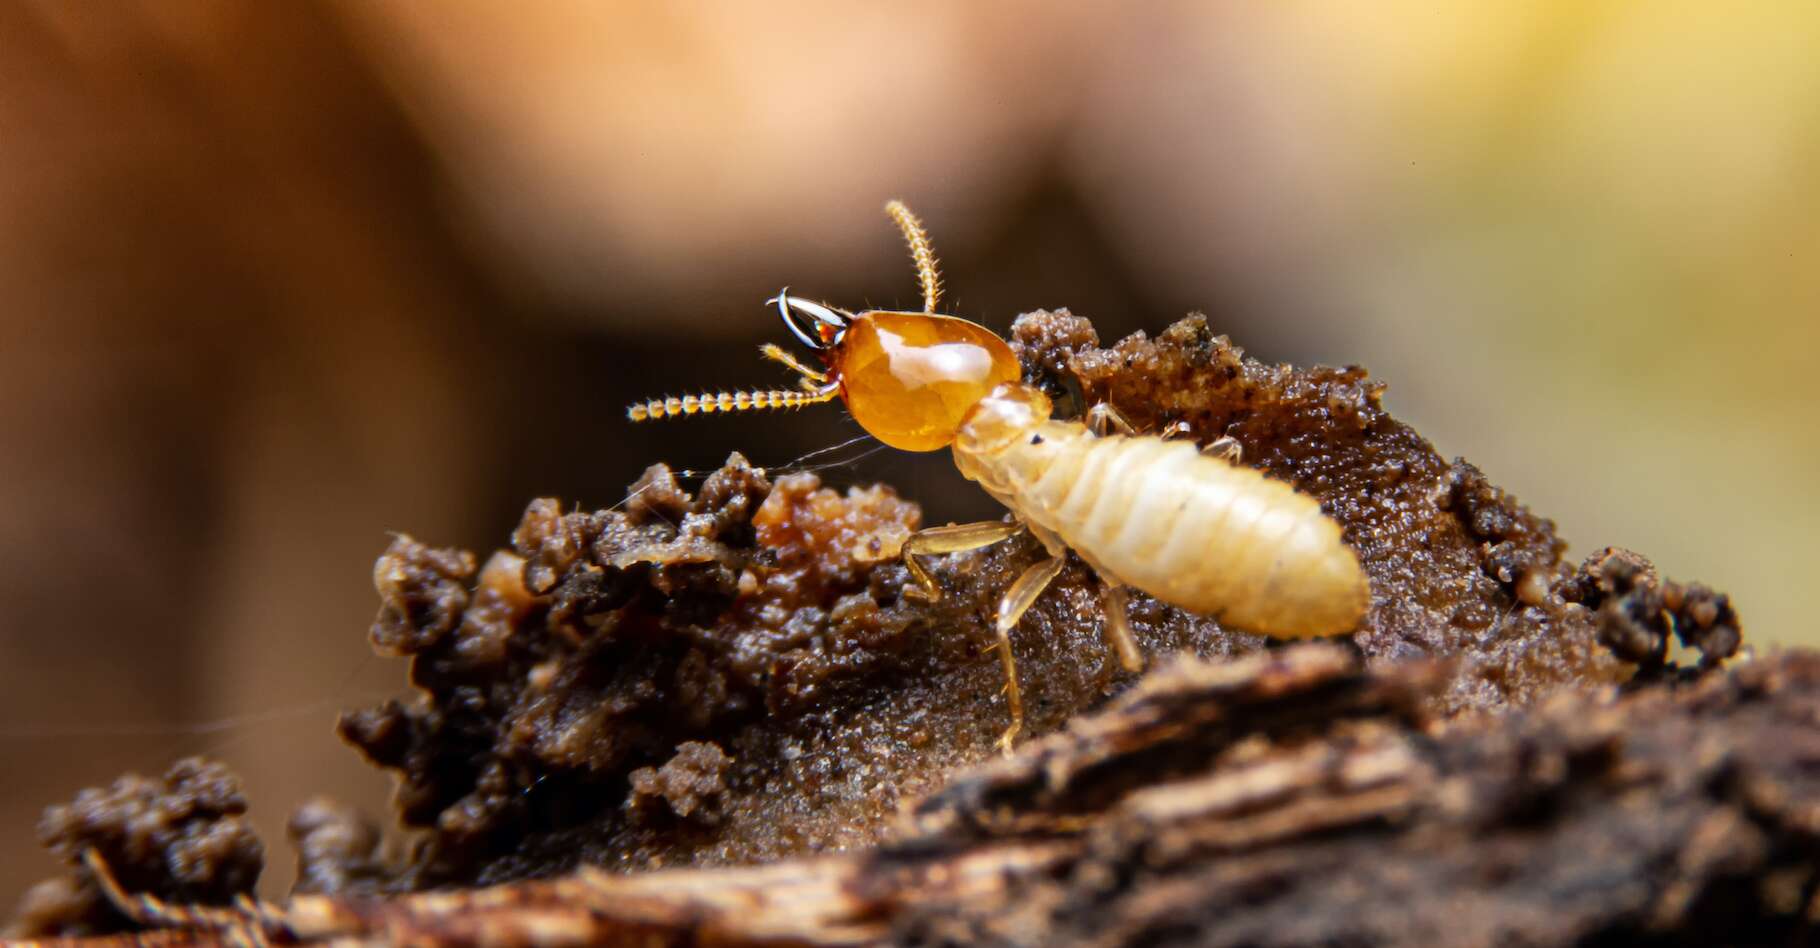 Le termite construit des gratte-ciels et des cités souterraines